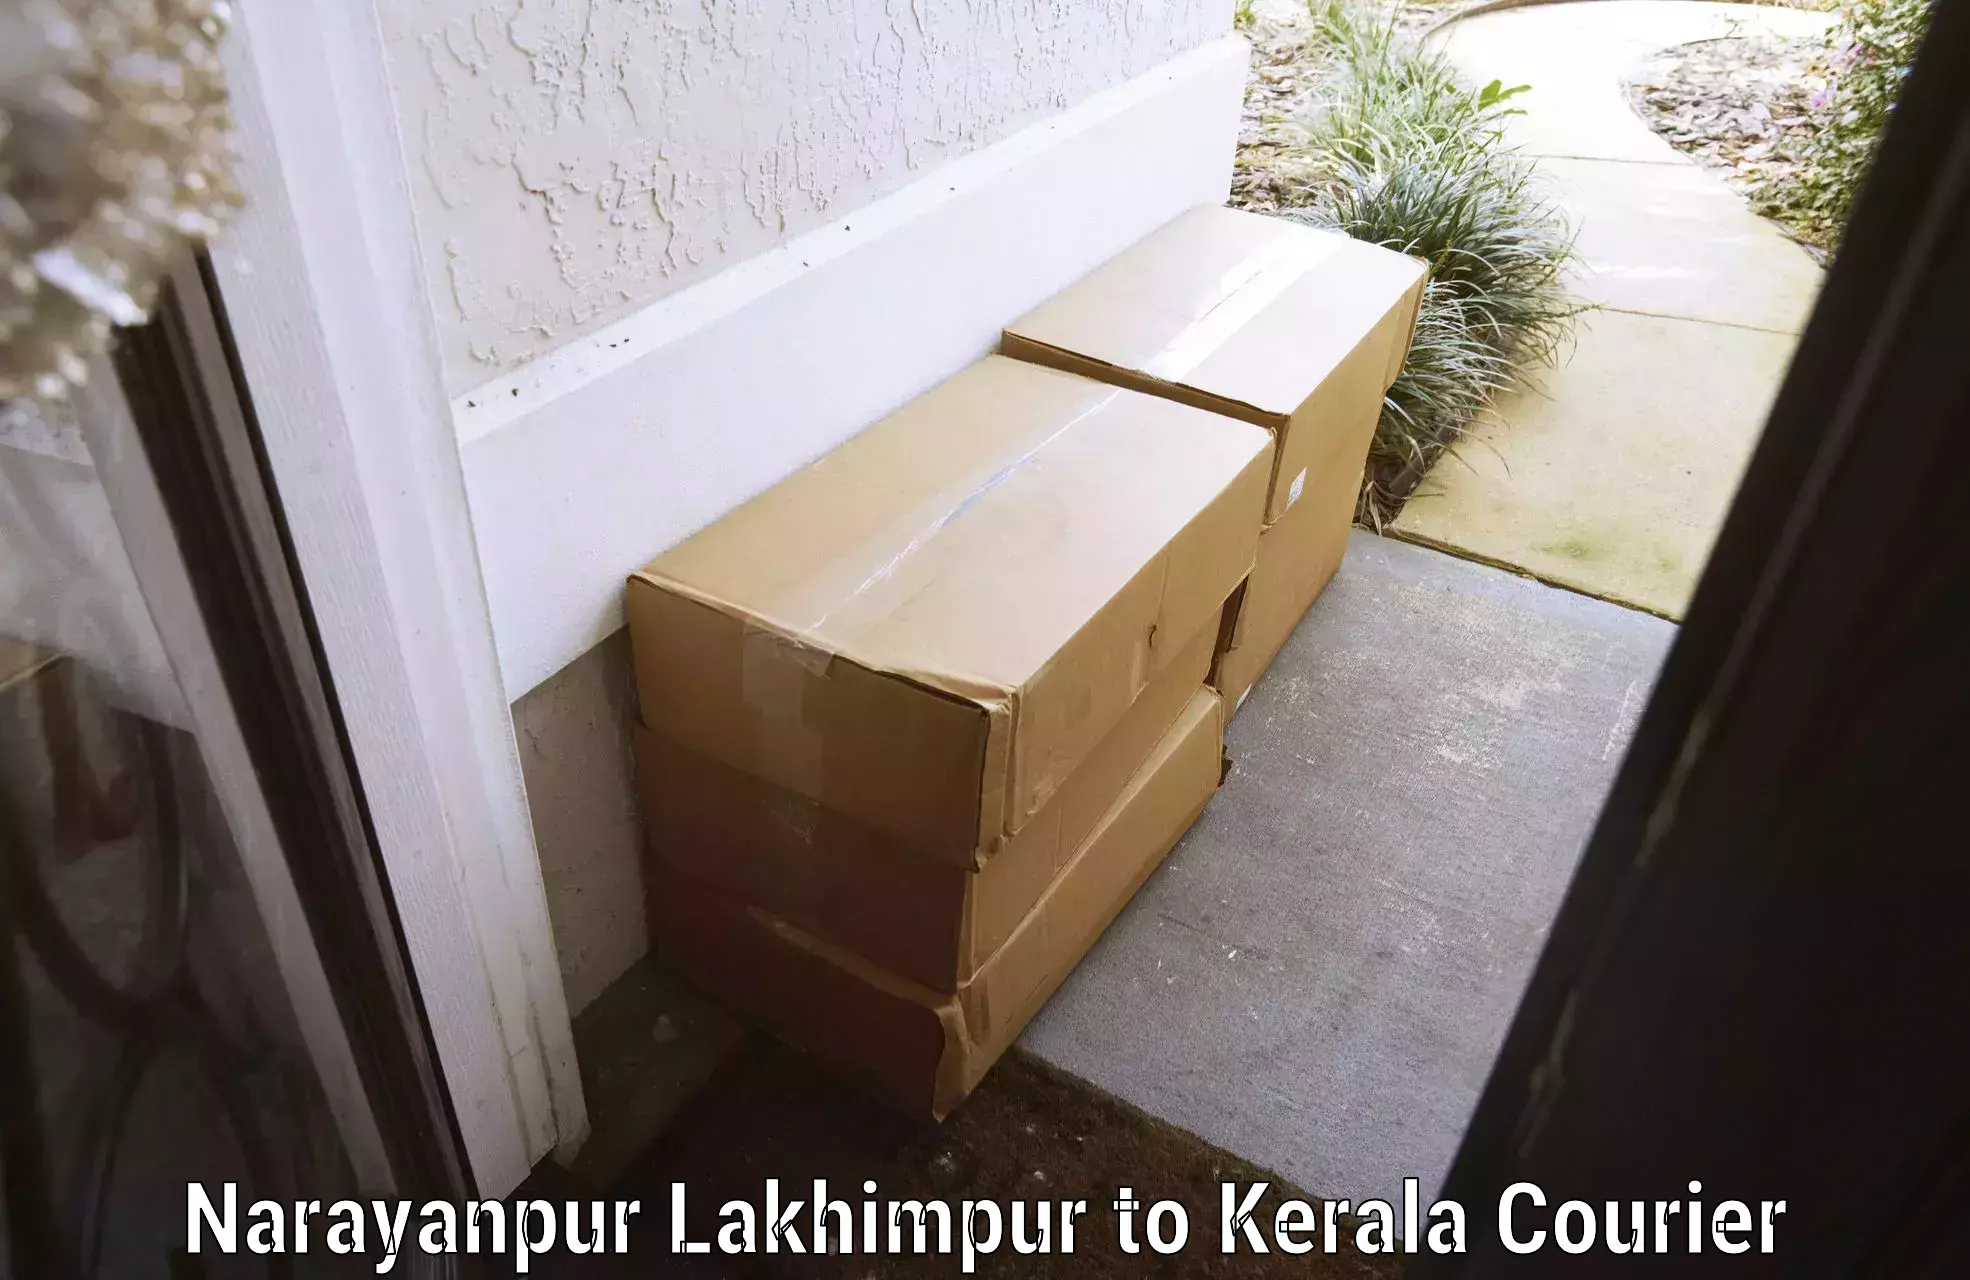 Luggage transport logistics Narayanpur Lakhimpur to Ernakulam